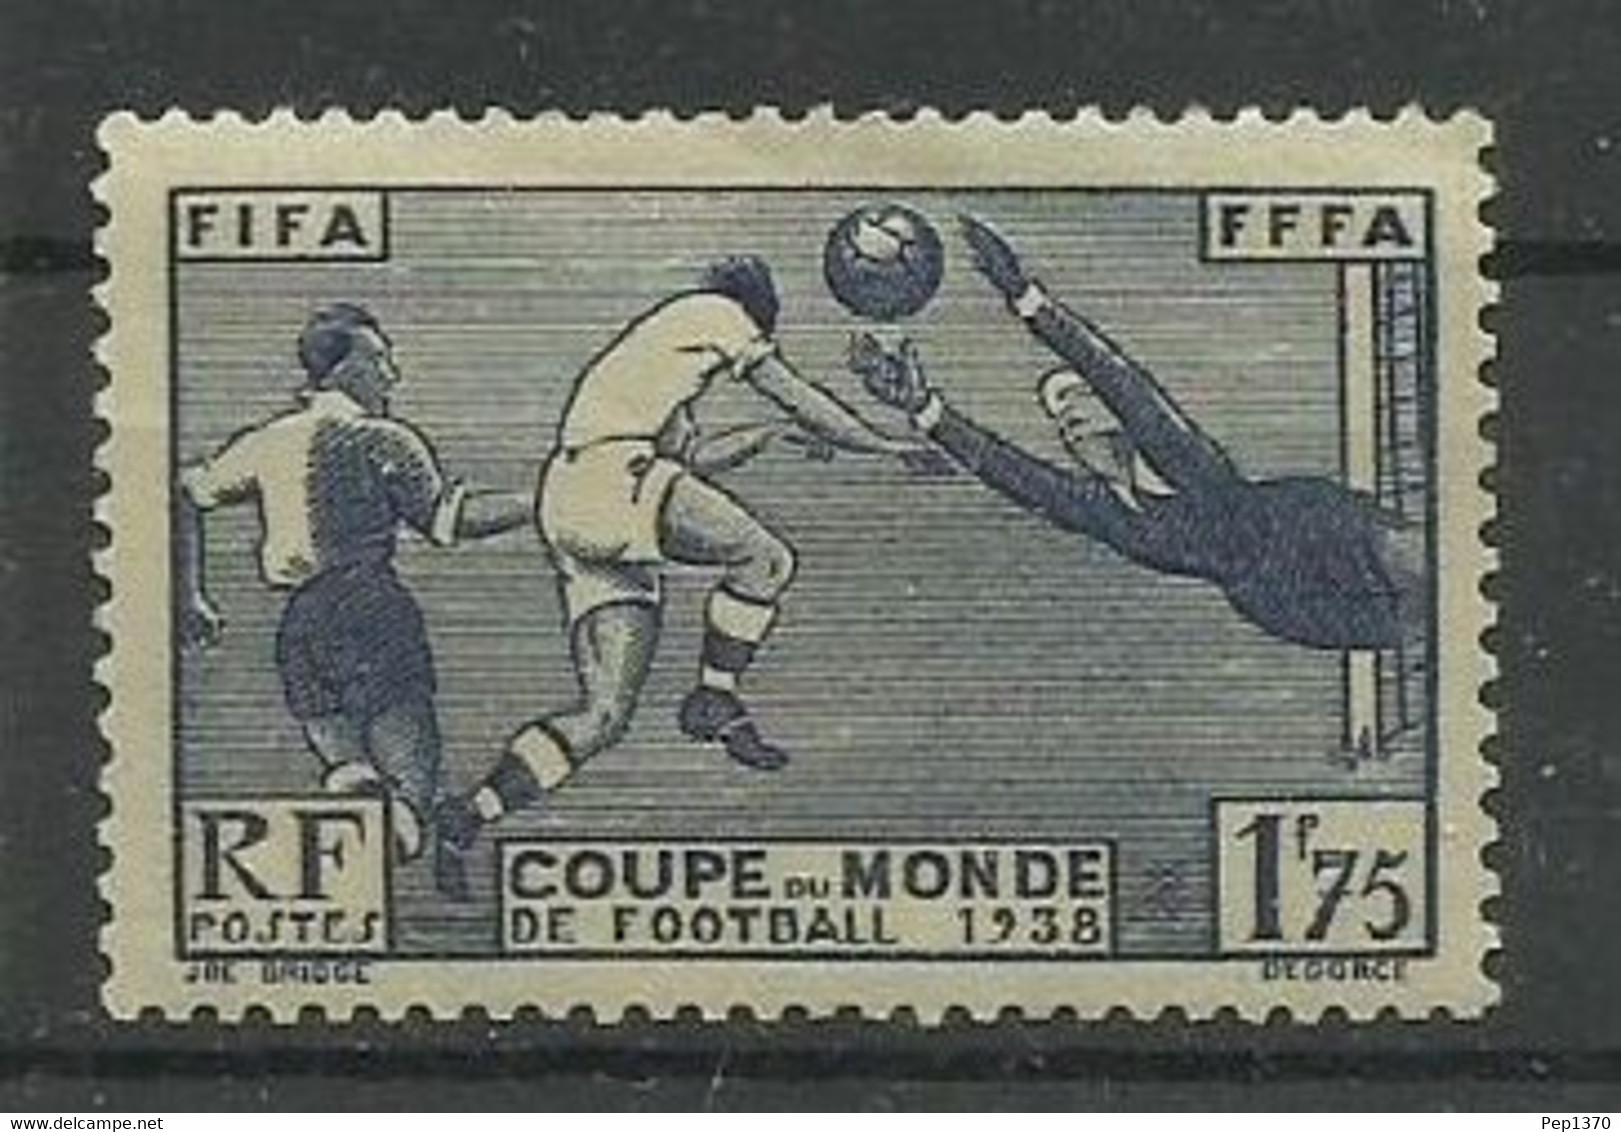 FRANCIA 1938 - CAMPEONATO DEL MUNDO DE FUTBOL FRANCIA 1938 - YVERT 396* - 1938 – Frankreich